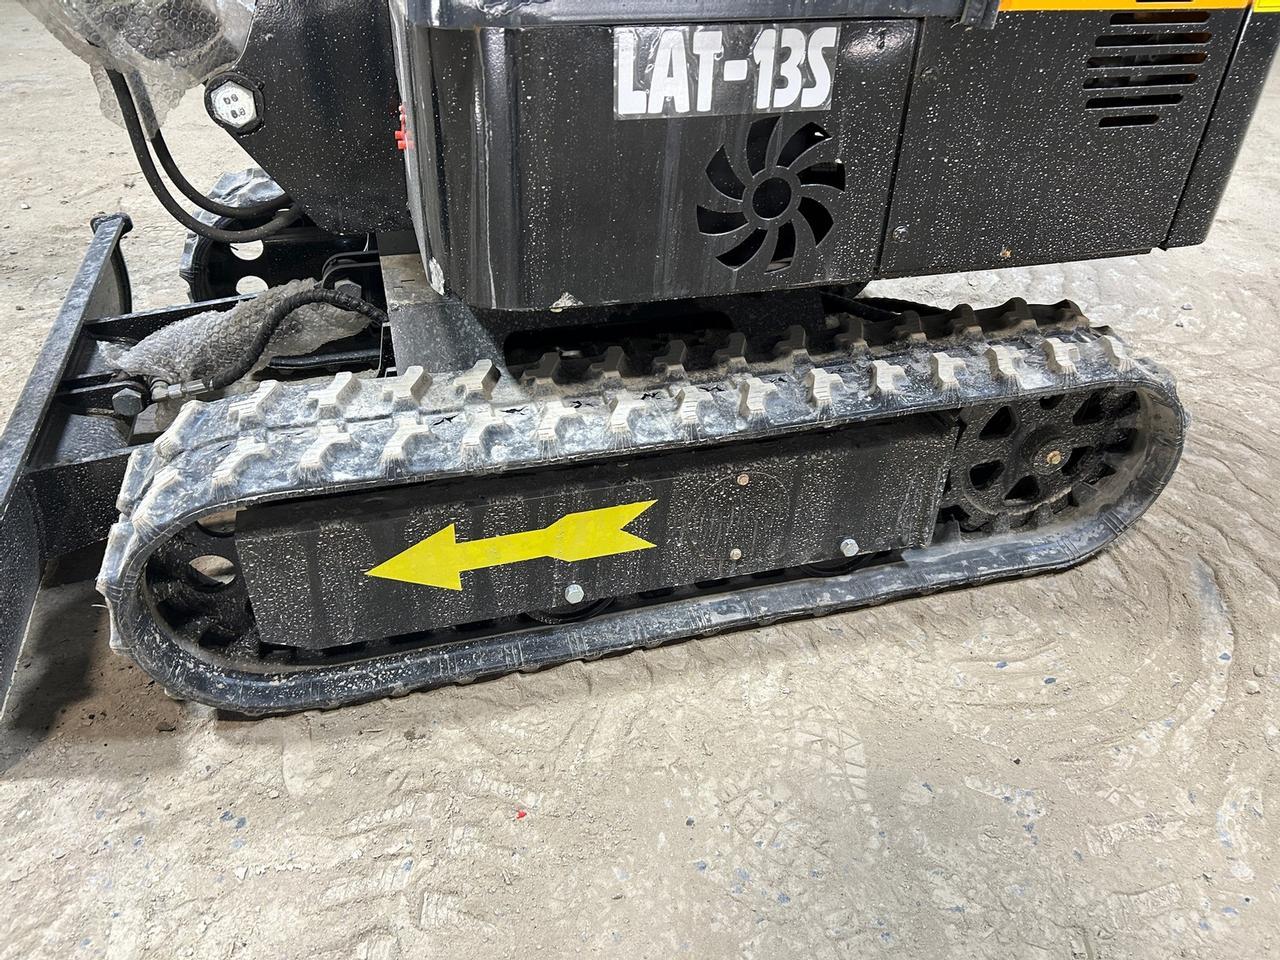 Lanty LAT-13S Mini Excavator